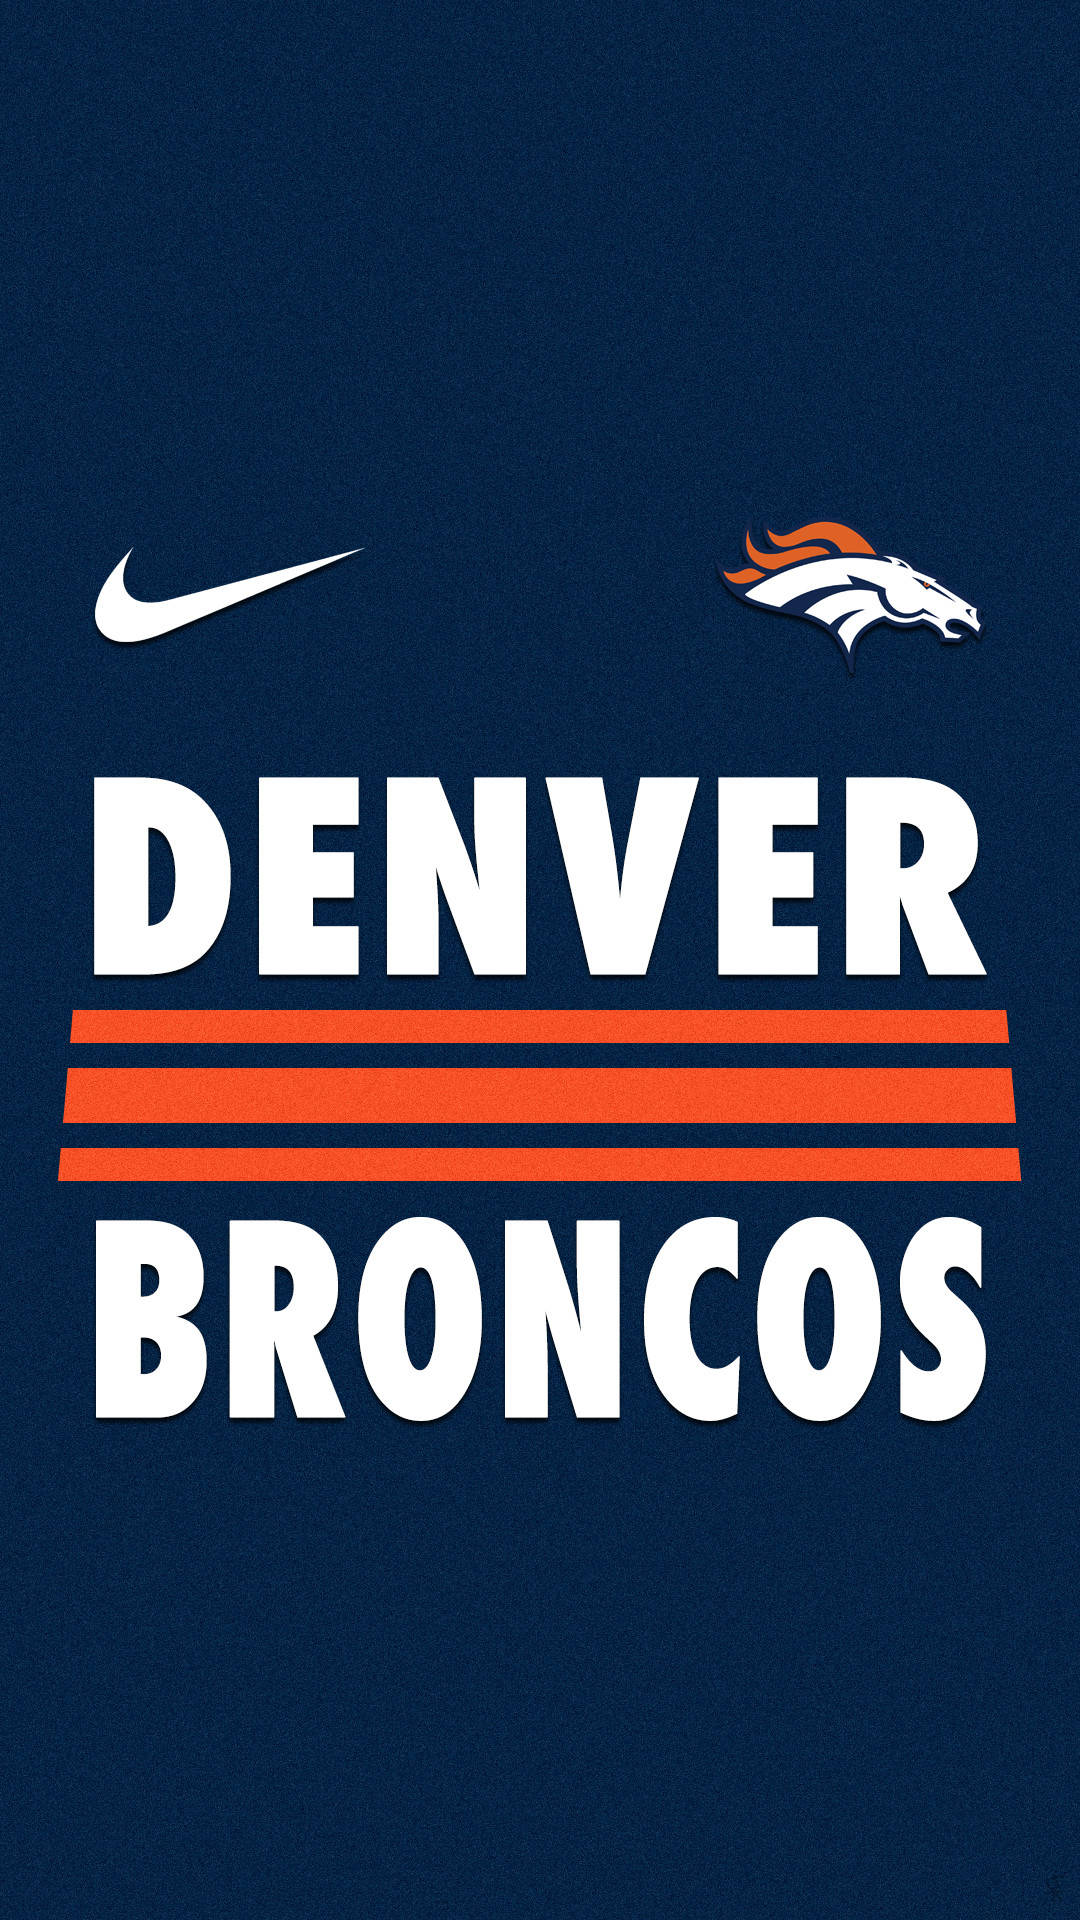 Denver Broncos Iphone Background Wallpaper